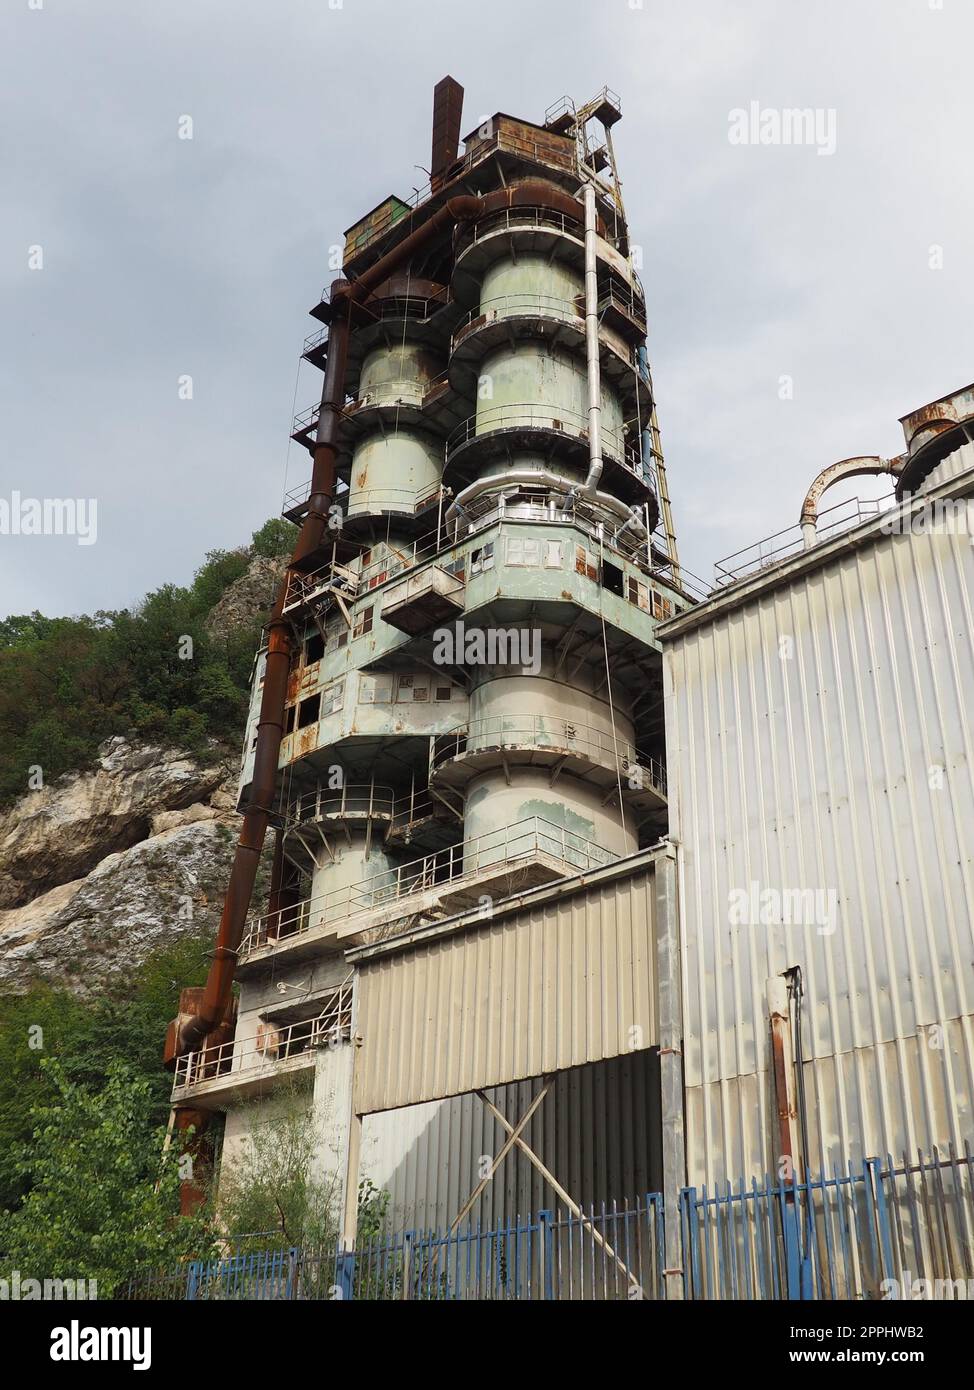 Mali Zvornik, Serbie, septembre 29 2022 usine de ciment, mine de Brasina. Architecture industrielle. Smog et poussière sale pollution de l'air fond industriel sur l'usine extérieure de concassage et de creusement de roche Banque D'Images